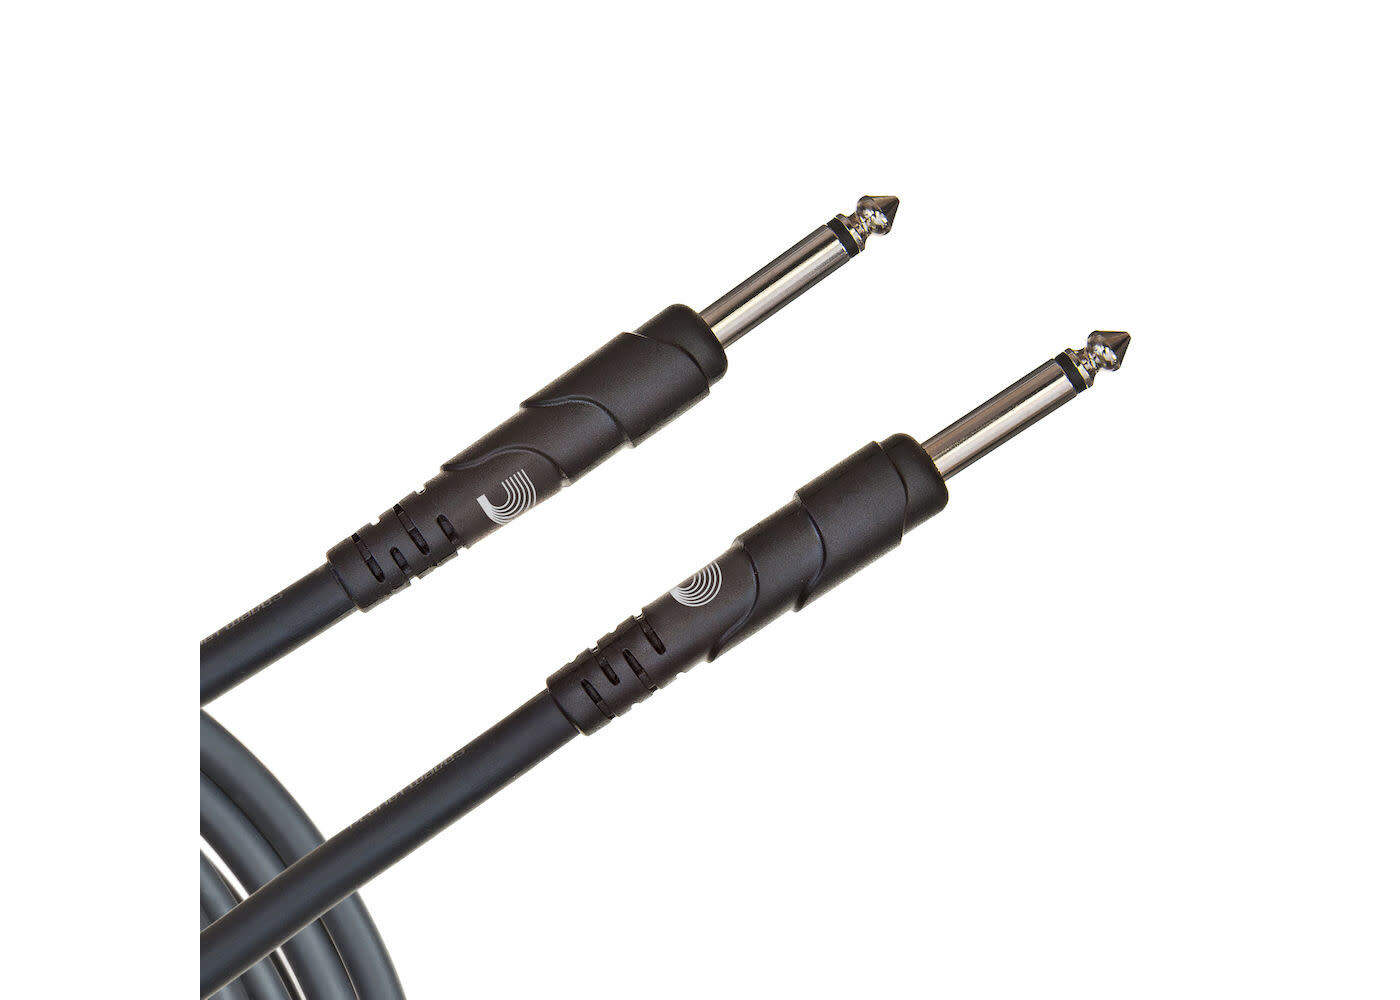 D'Addario D'Addario Classic Series Speaker Cable - 3 foot